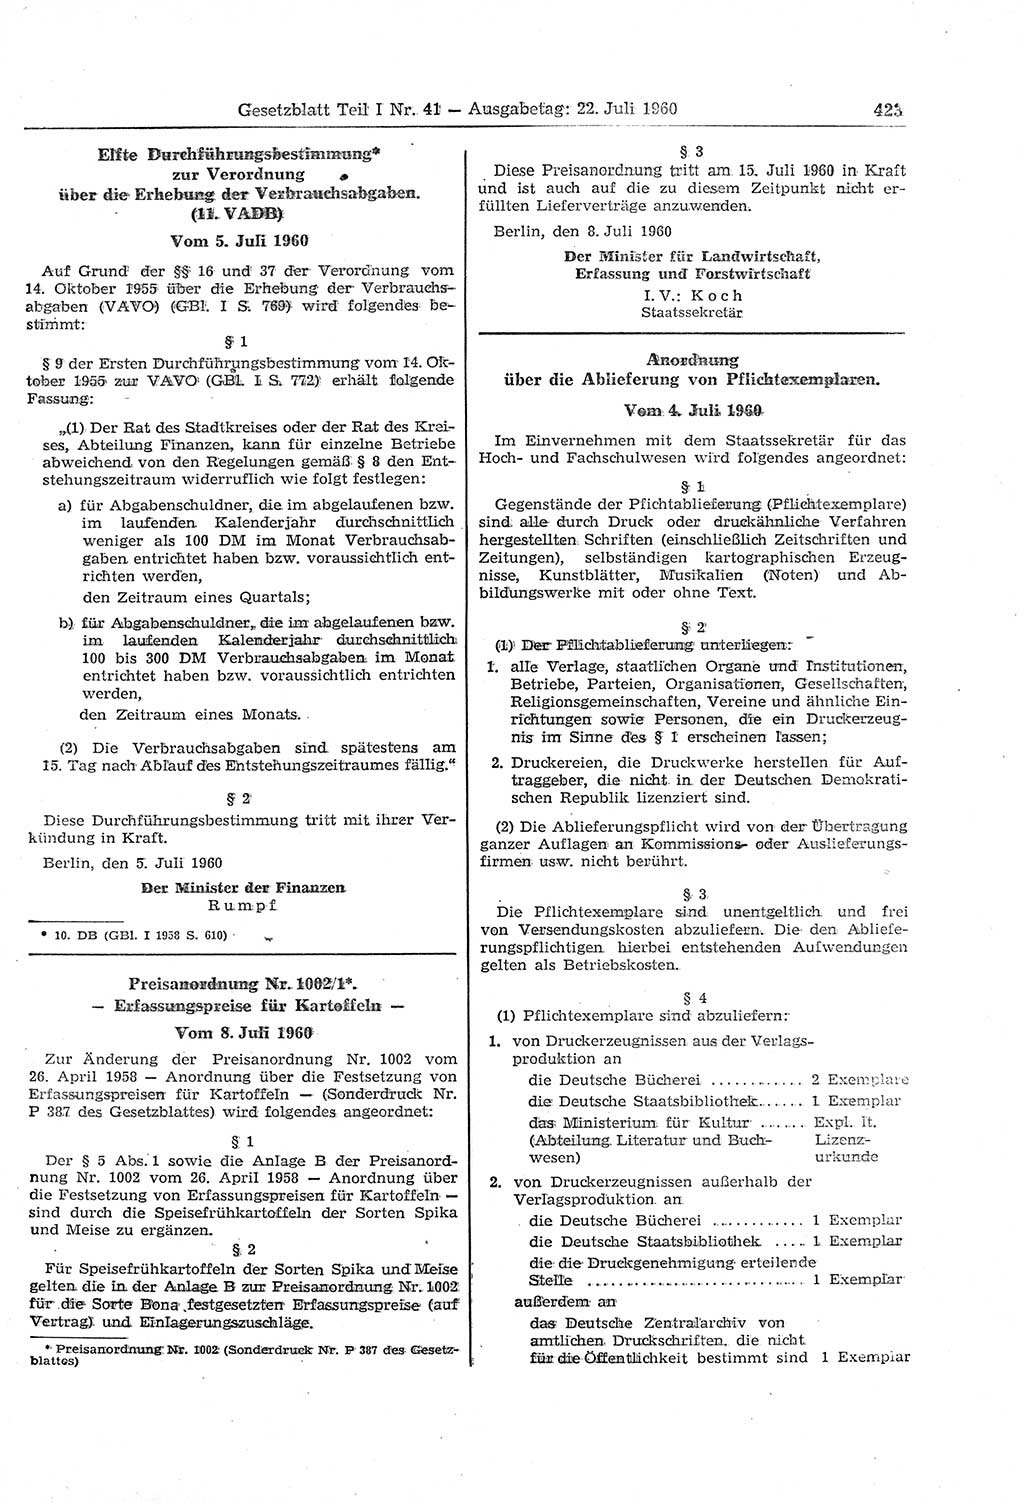 Gesetzblatt (GBl.) der Deutschen Demokratischen Republik (DDR) Teil Ⅰ 1960, Seite 423 (GBl. DDR Ⅰ 1960, S. 423)